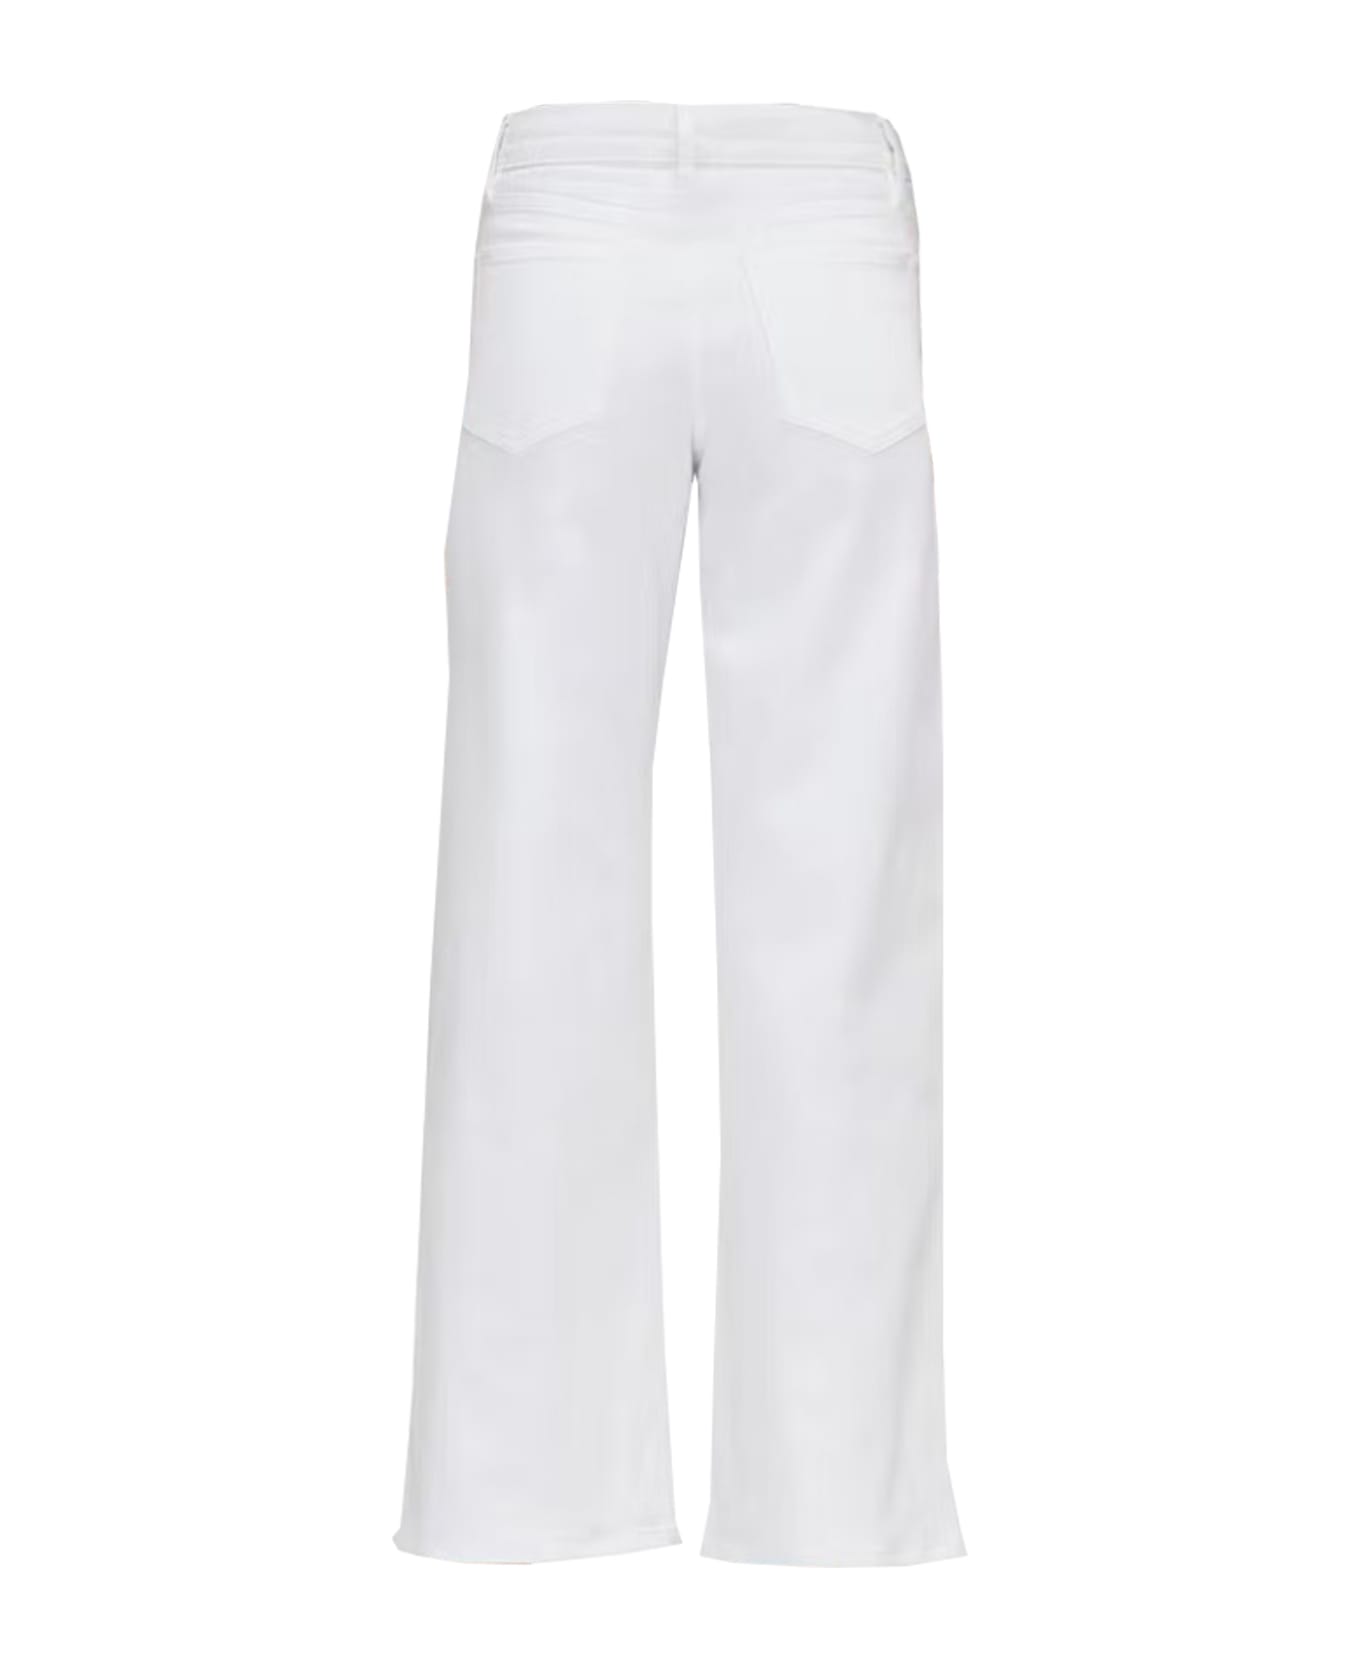 Frame Jeans - White デニム